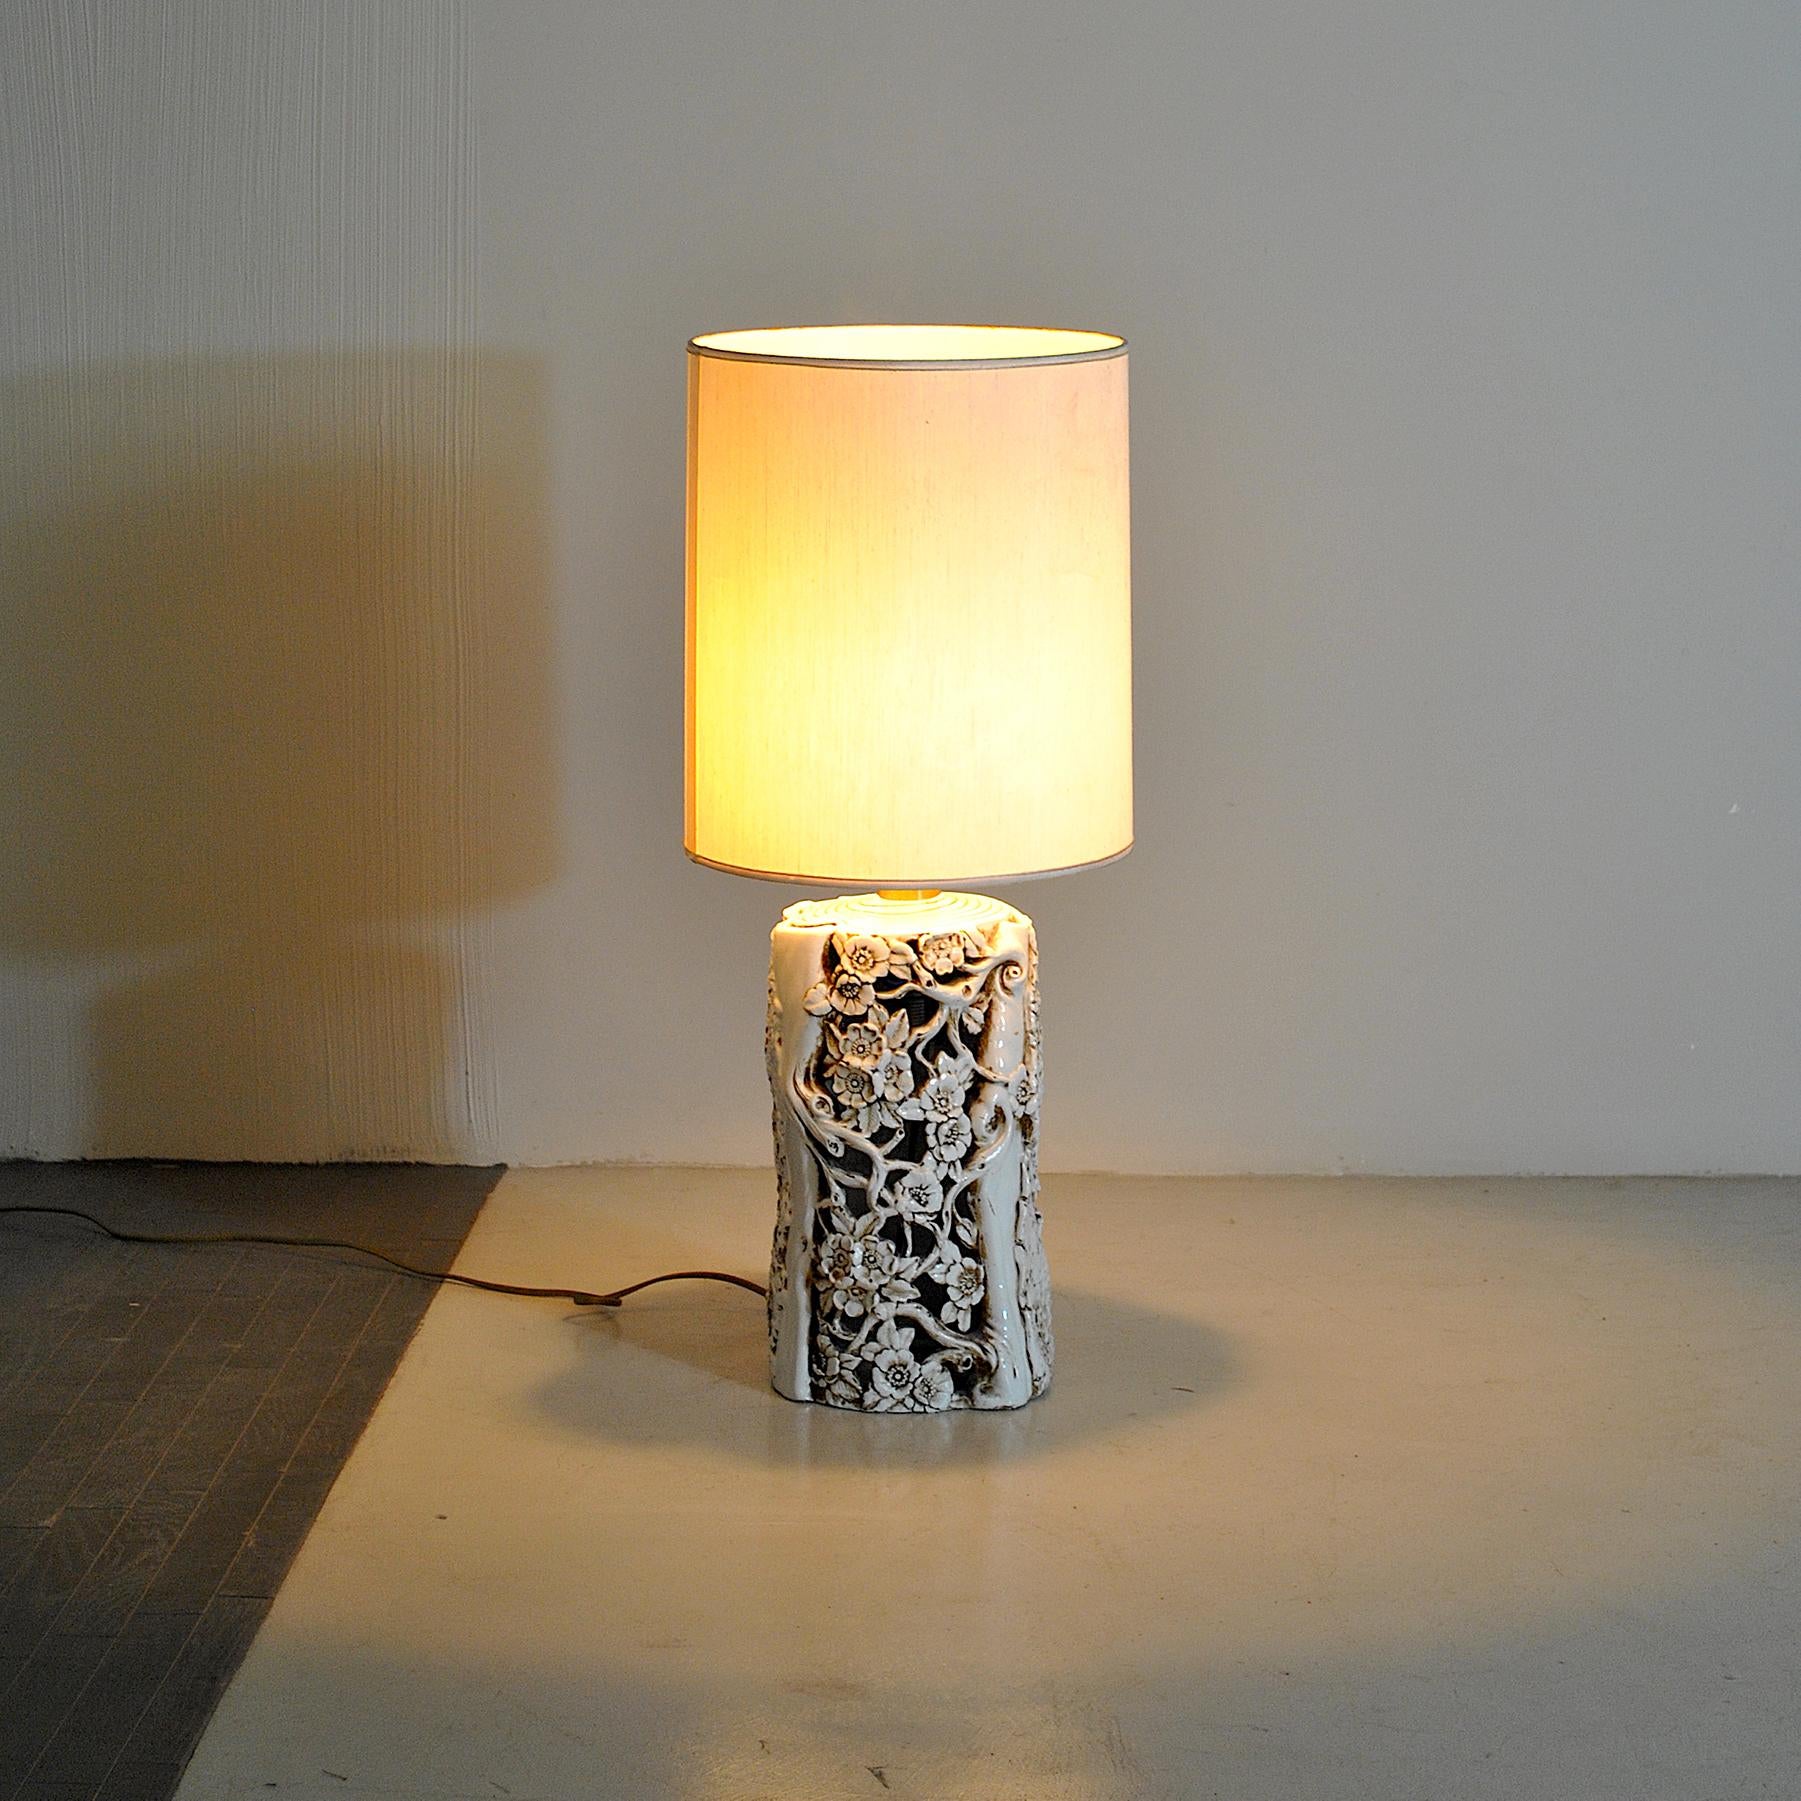 Lampe de table sculpturale des années 1960 avec une structure en céramique émaillée finement travaillée.

La lampe est vendue sans l'abat-jour sur la photo, mais il peut être demandé dans la forme, les tailles et les couleurs que vous souhaitez